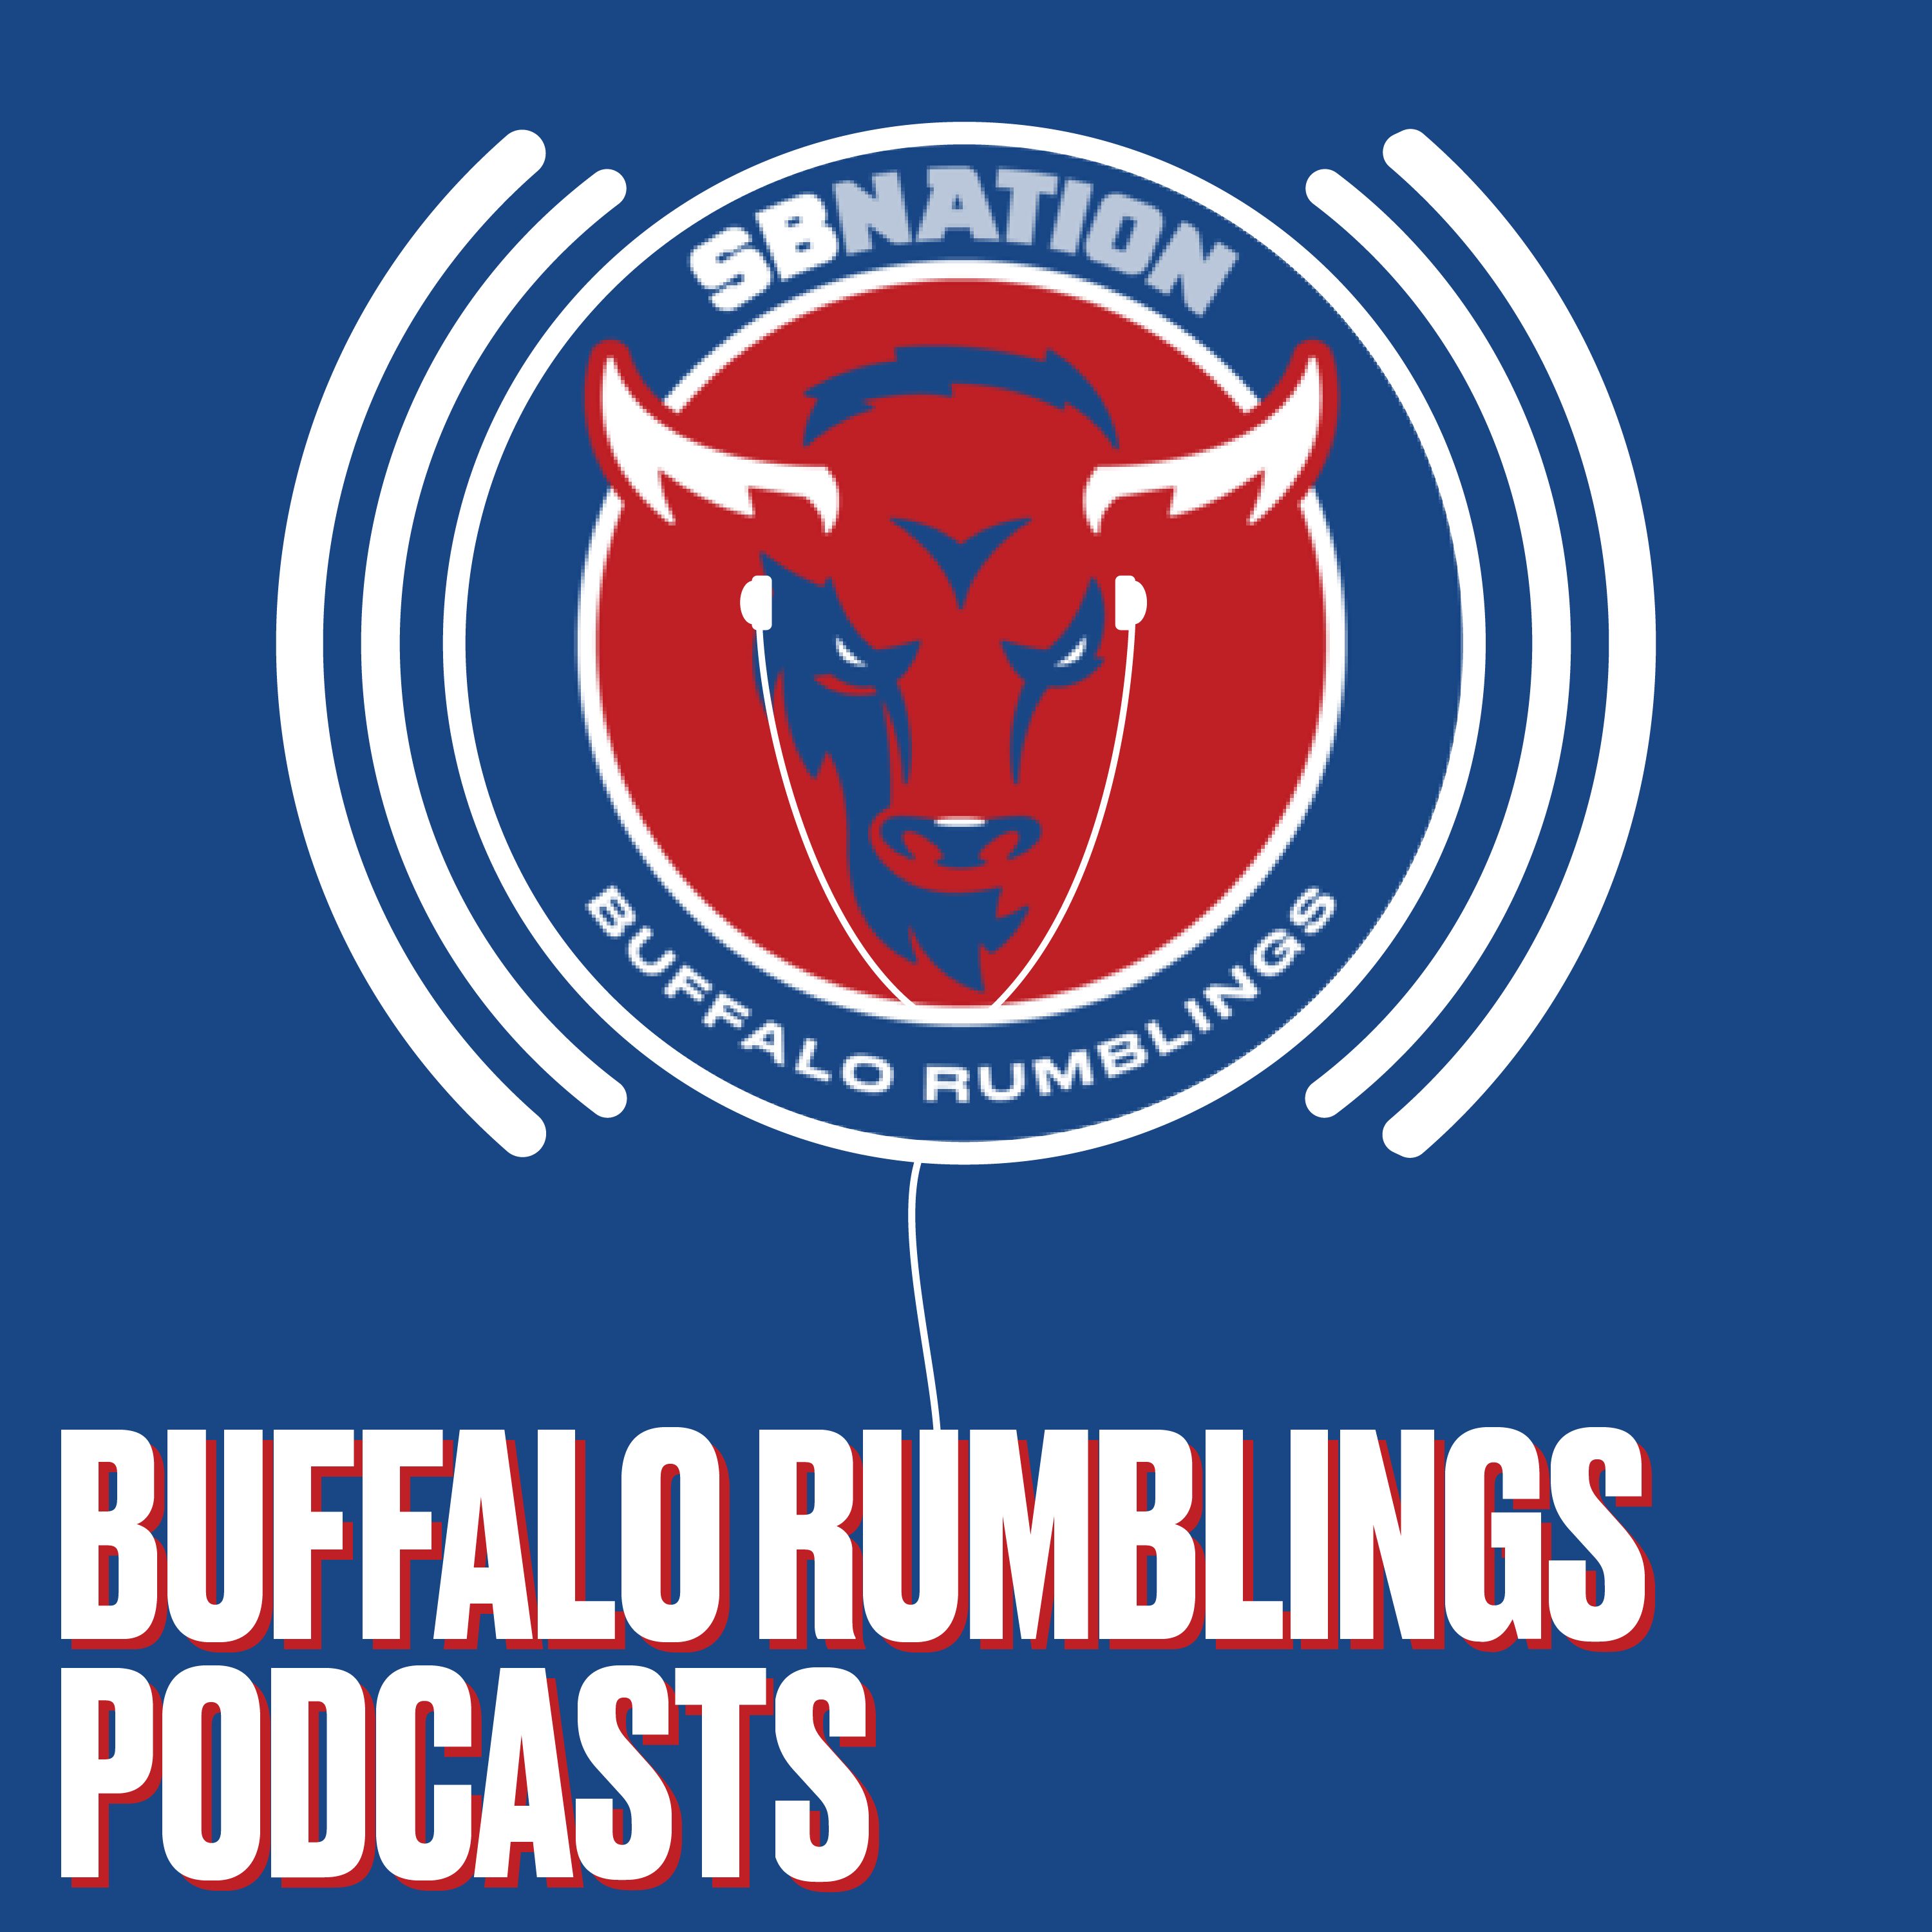 buffalo rumblings com